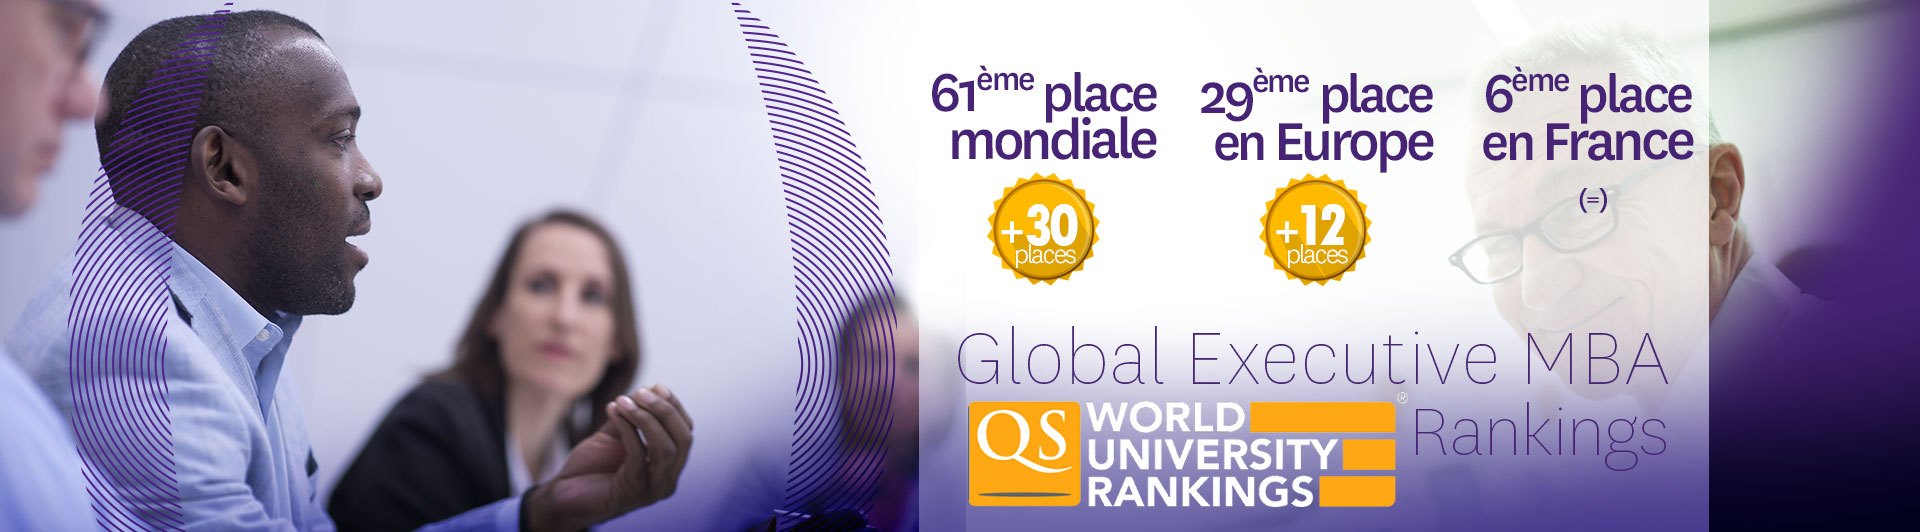 NEOMA Business School classée à la 61e place mondiale dans le classement QS 2020 des meilleurs Executive MBA